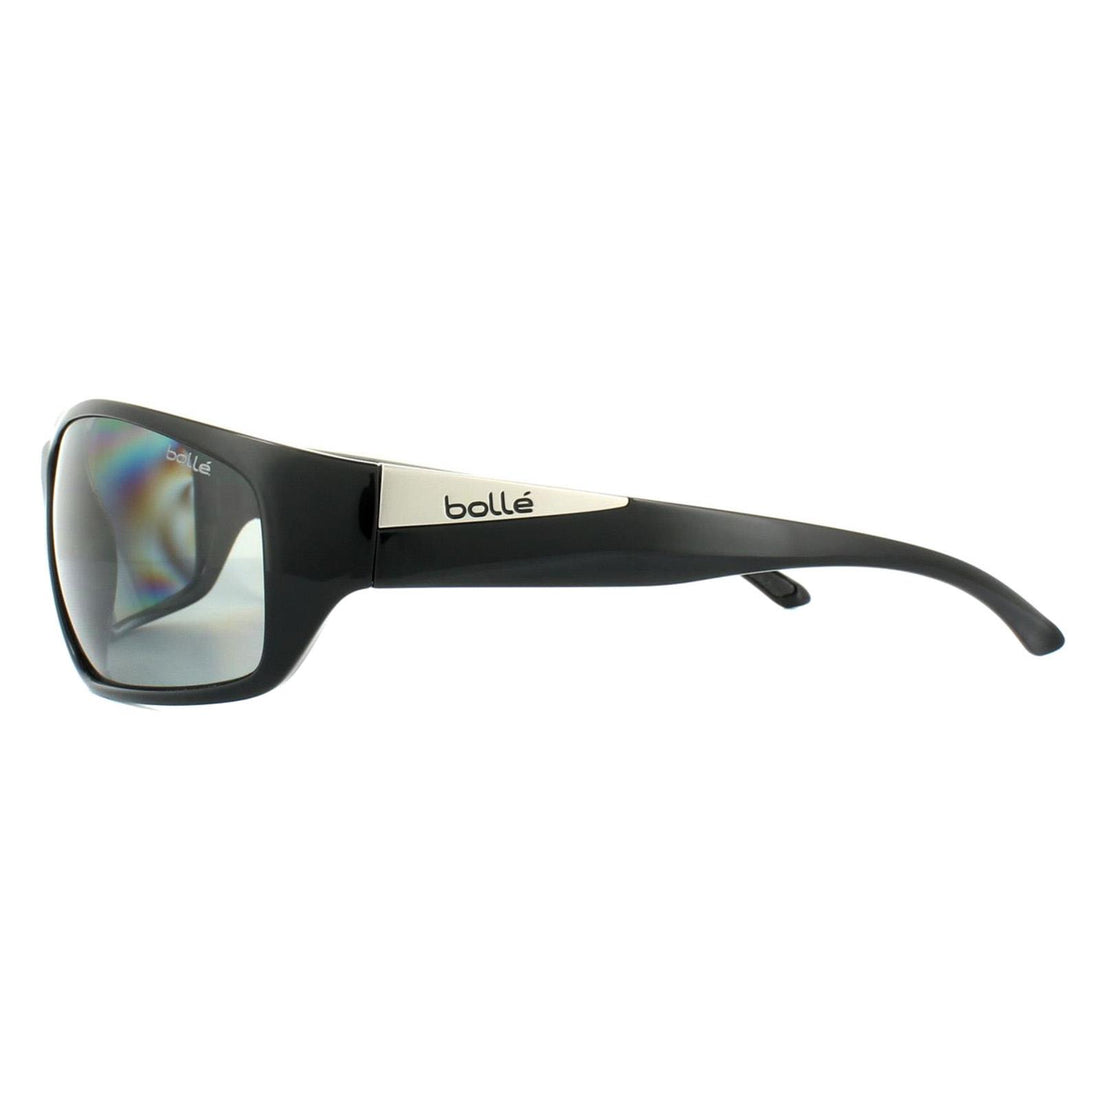 Bolle Sunglasses Keel 11993 Shiny Black Modulator Grey Polarized